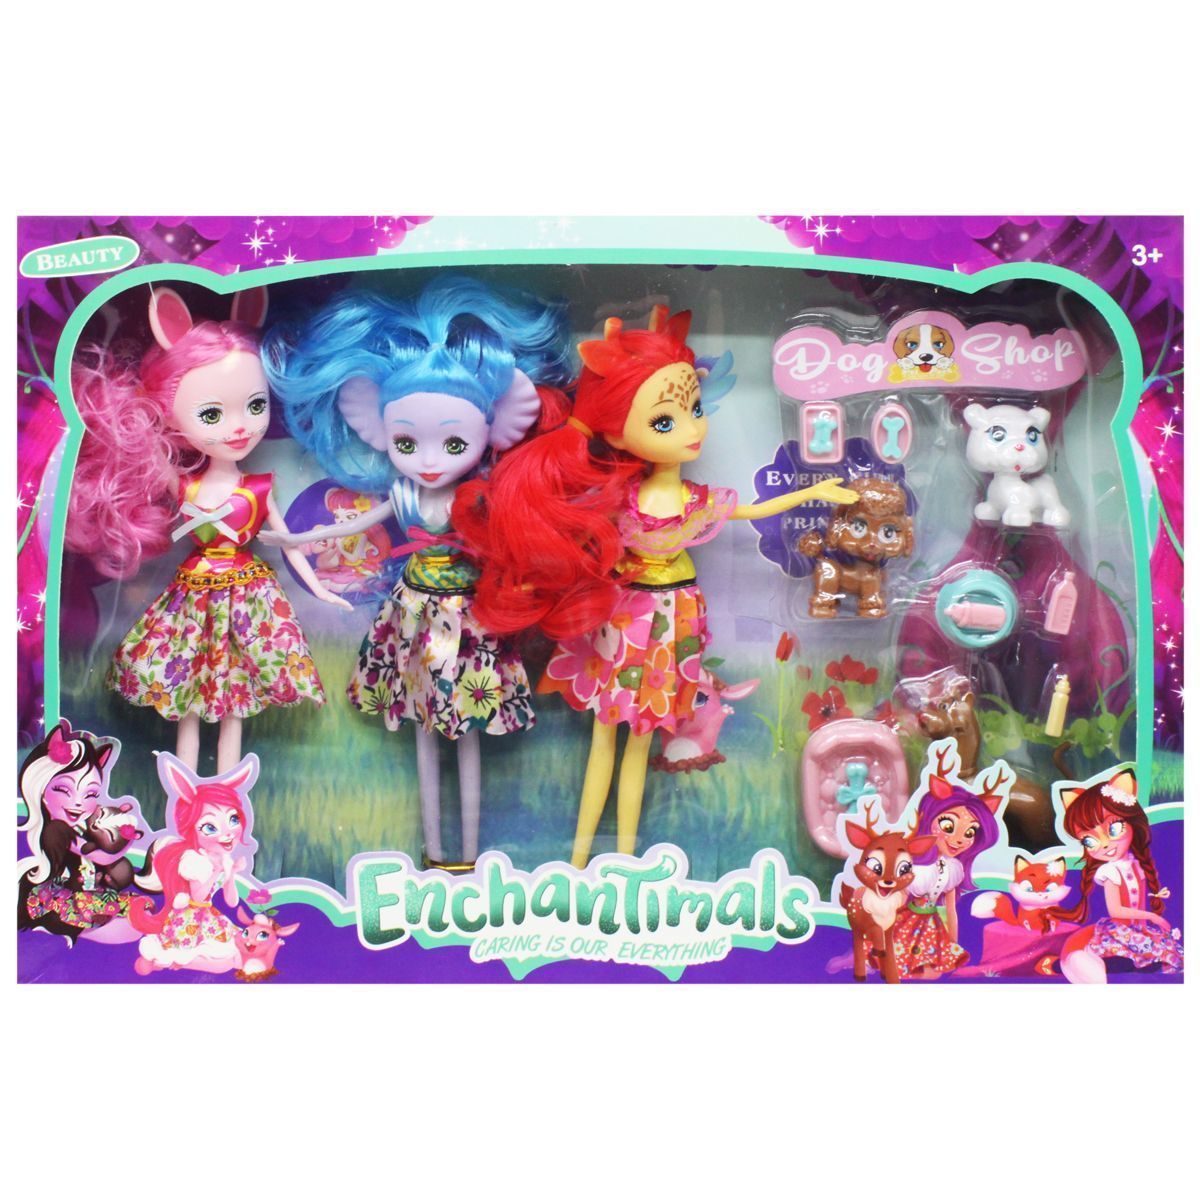 Уценка.  Набор кукол "Enchantimals"  - отпала голова у куклы с красными волосами